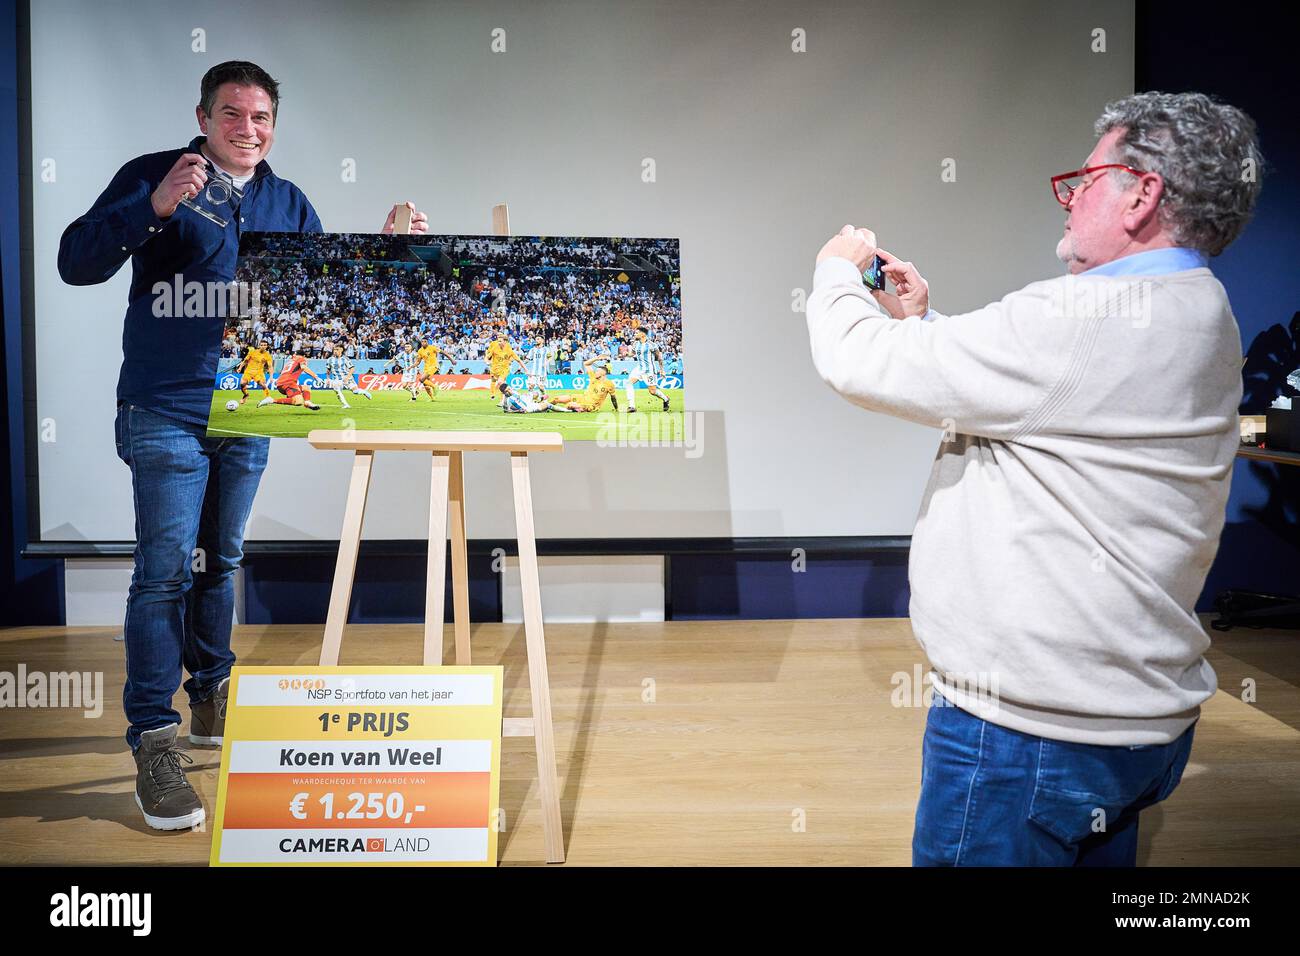 RIJSWIJK - il fotografo Koen van Weel (ANP) ha vinto la NSP/Zilveren Camera Sportfoto con la sua foto della Coppa del mondo di calcio in Qatar. ANP PHIL NIJHUIS olanda fuori - belgio fuori Foto Stock